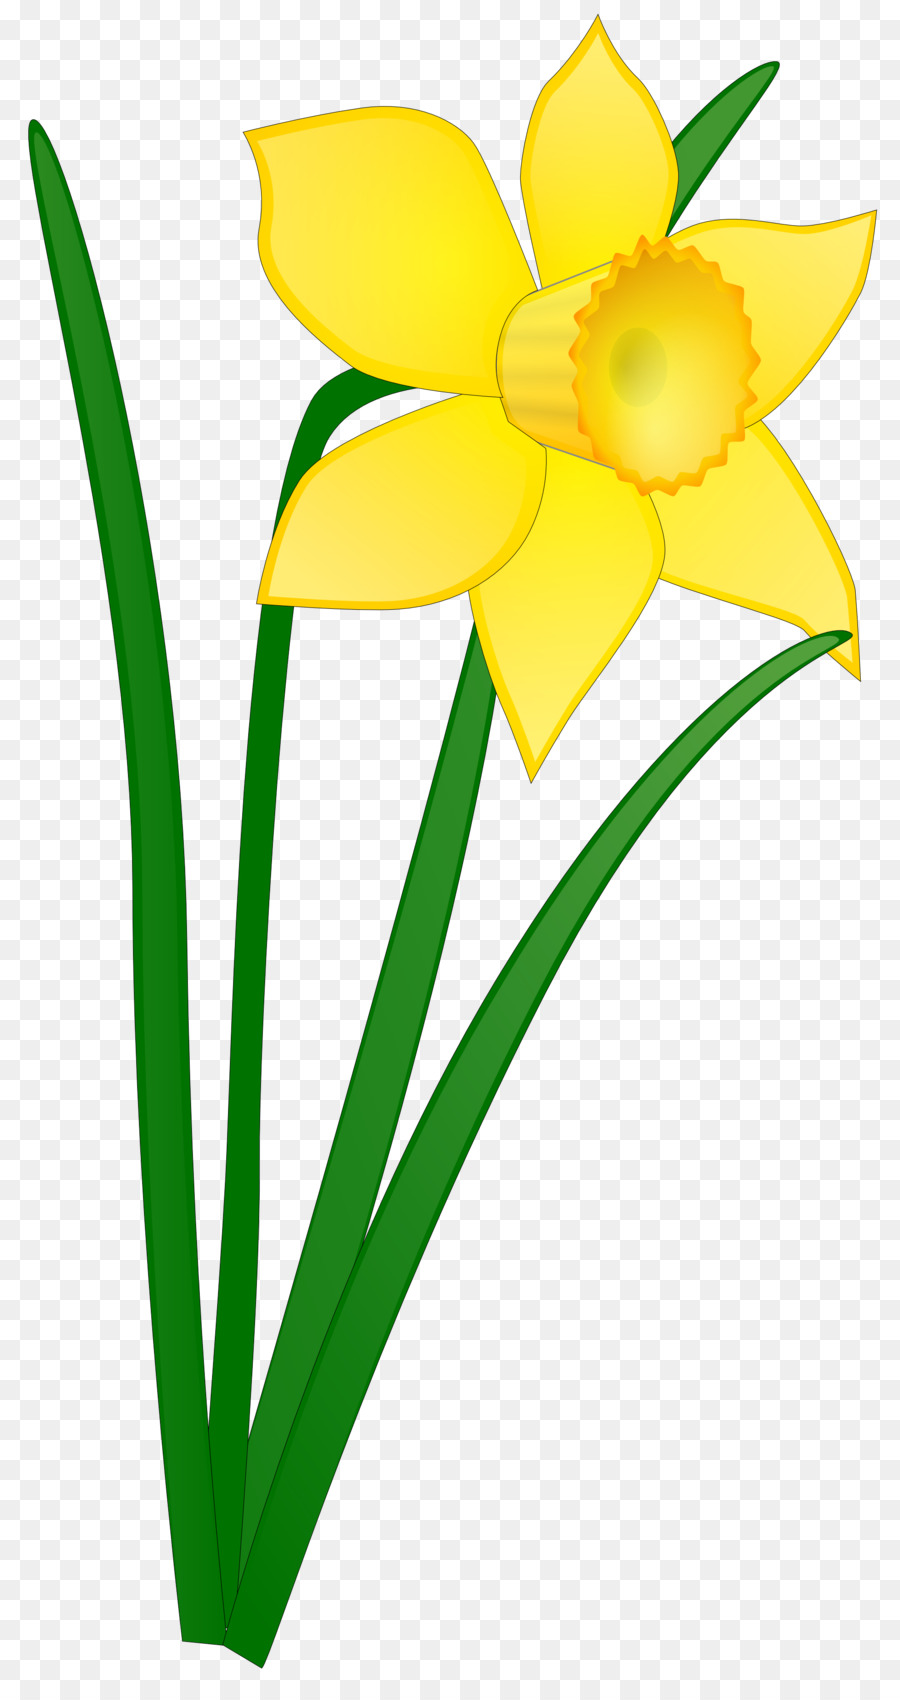 Daffodil Clip art - daffodil clip art png download - 1969*3684 - Free Transparent Daffodil png Download.